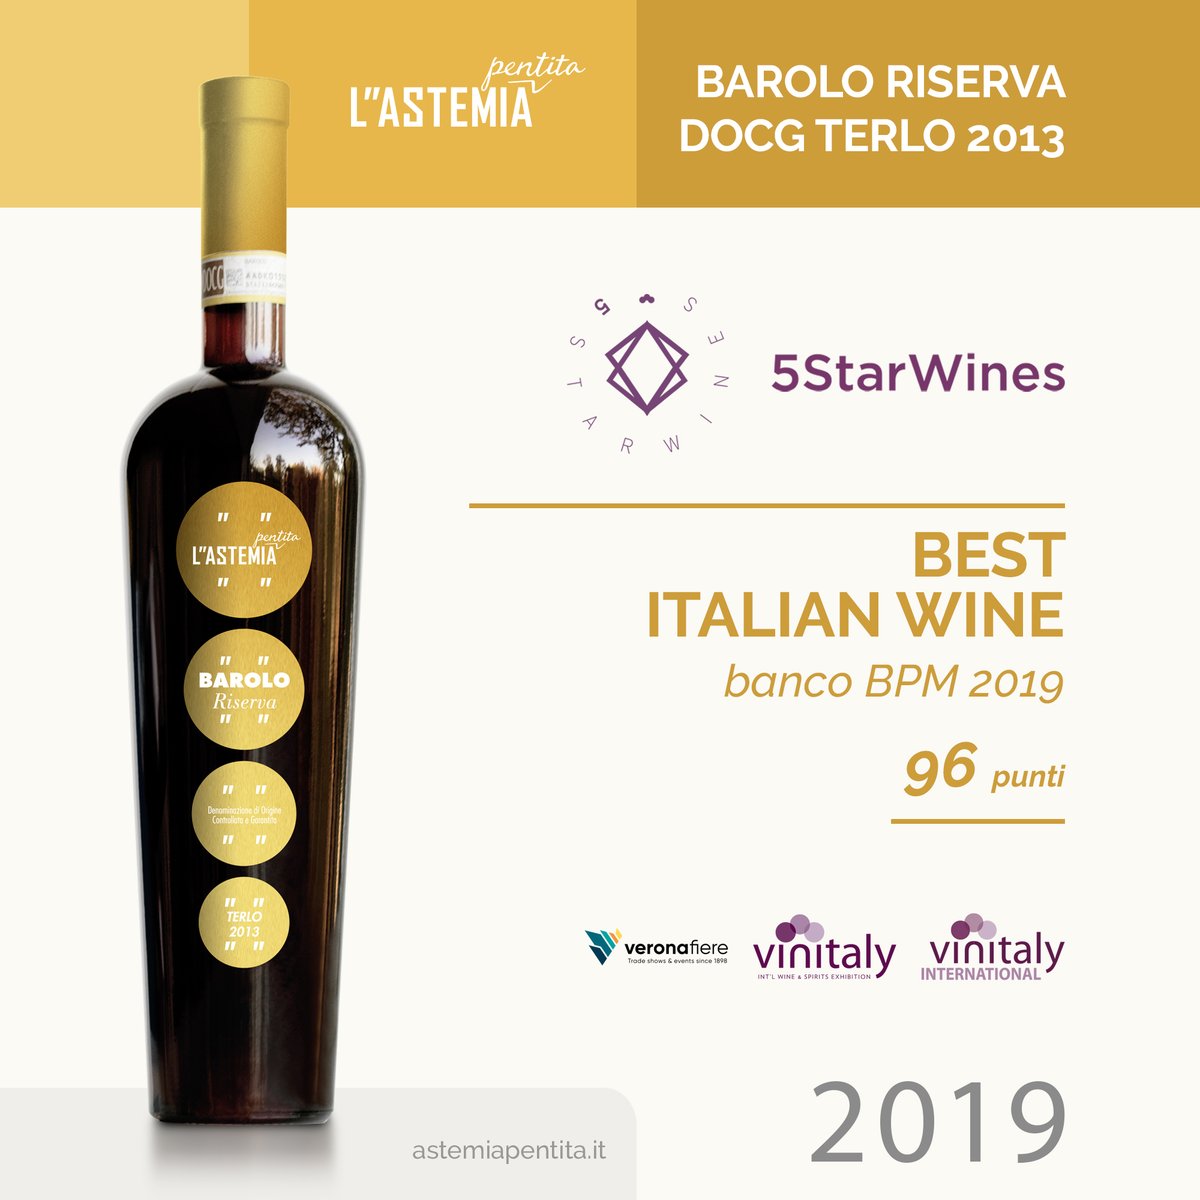 Barolo Riserva DOCG Terlo 2013 heeft mooie onderscheidingen ontvangen in 2019. Bent u opzoek naar een  Barolo wijn met hoofdletter 'B', kijk op vintaliani.nl/product/barolo…

#sommelier #restaurant #horeca #italy  #barolo #baroloterlo #barolodocg